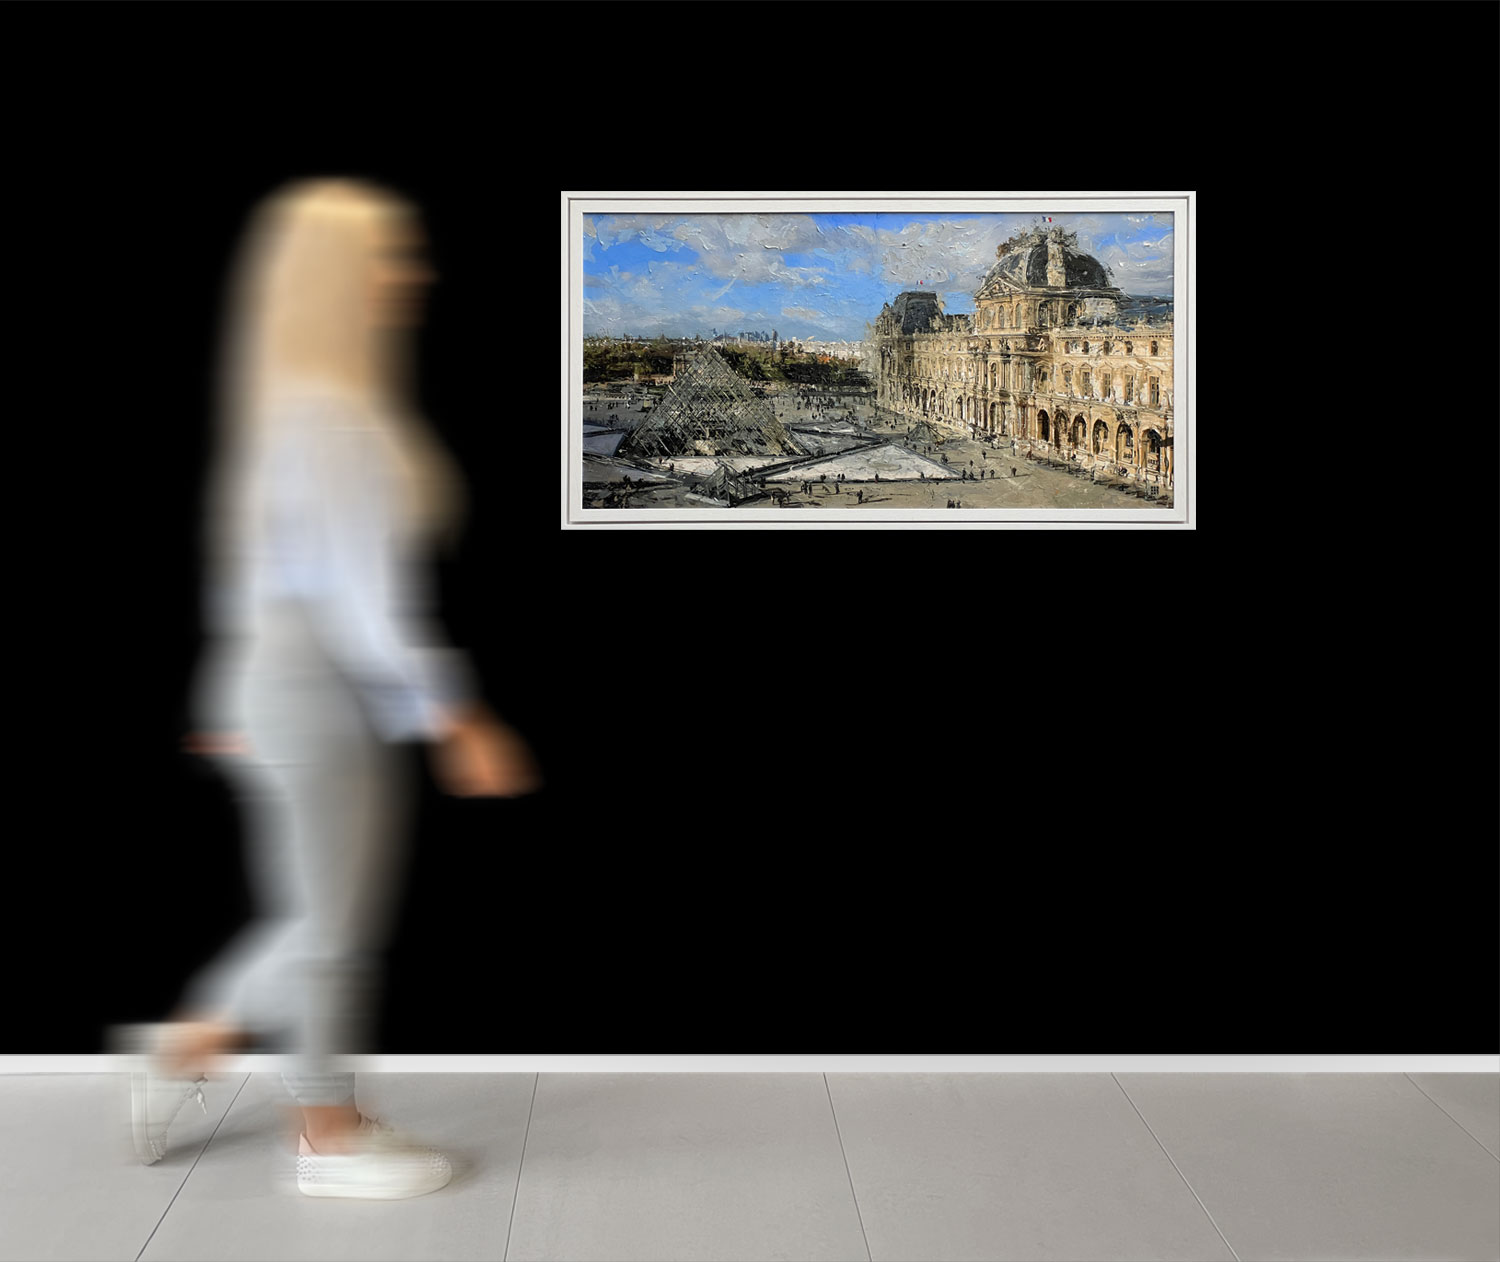 Ben Ark - The Louvre a